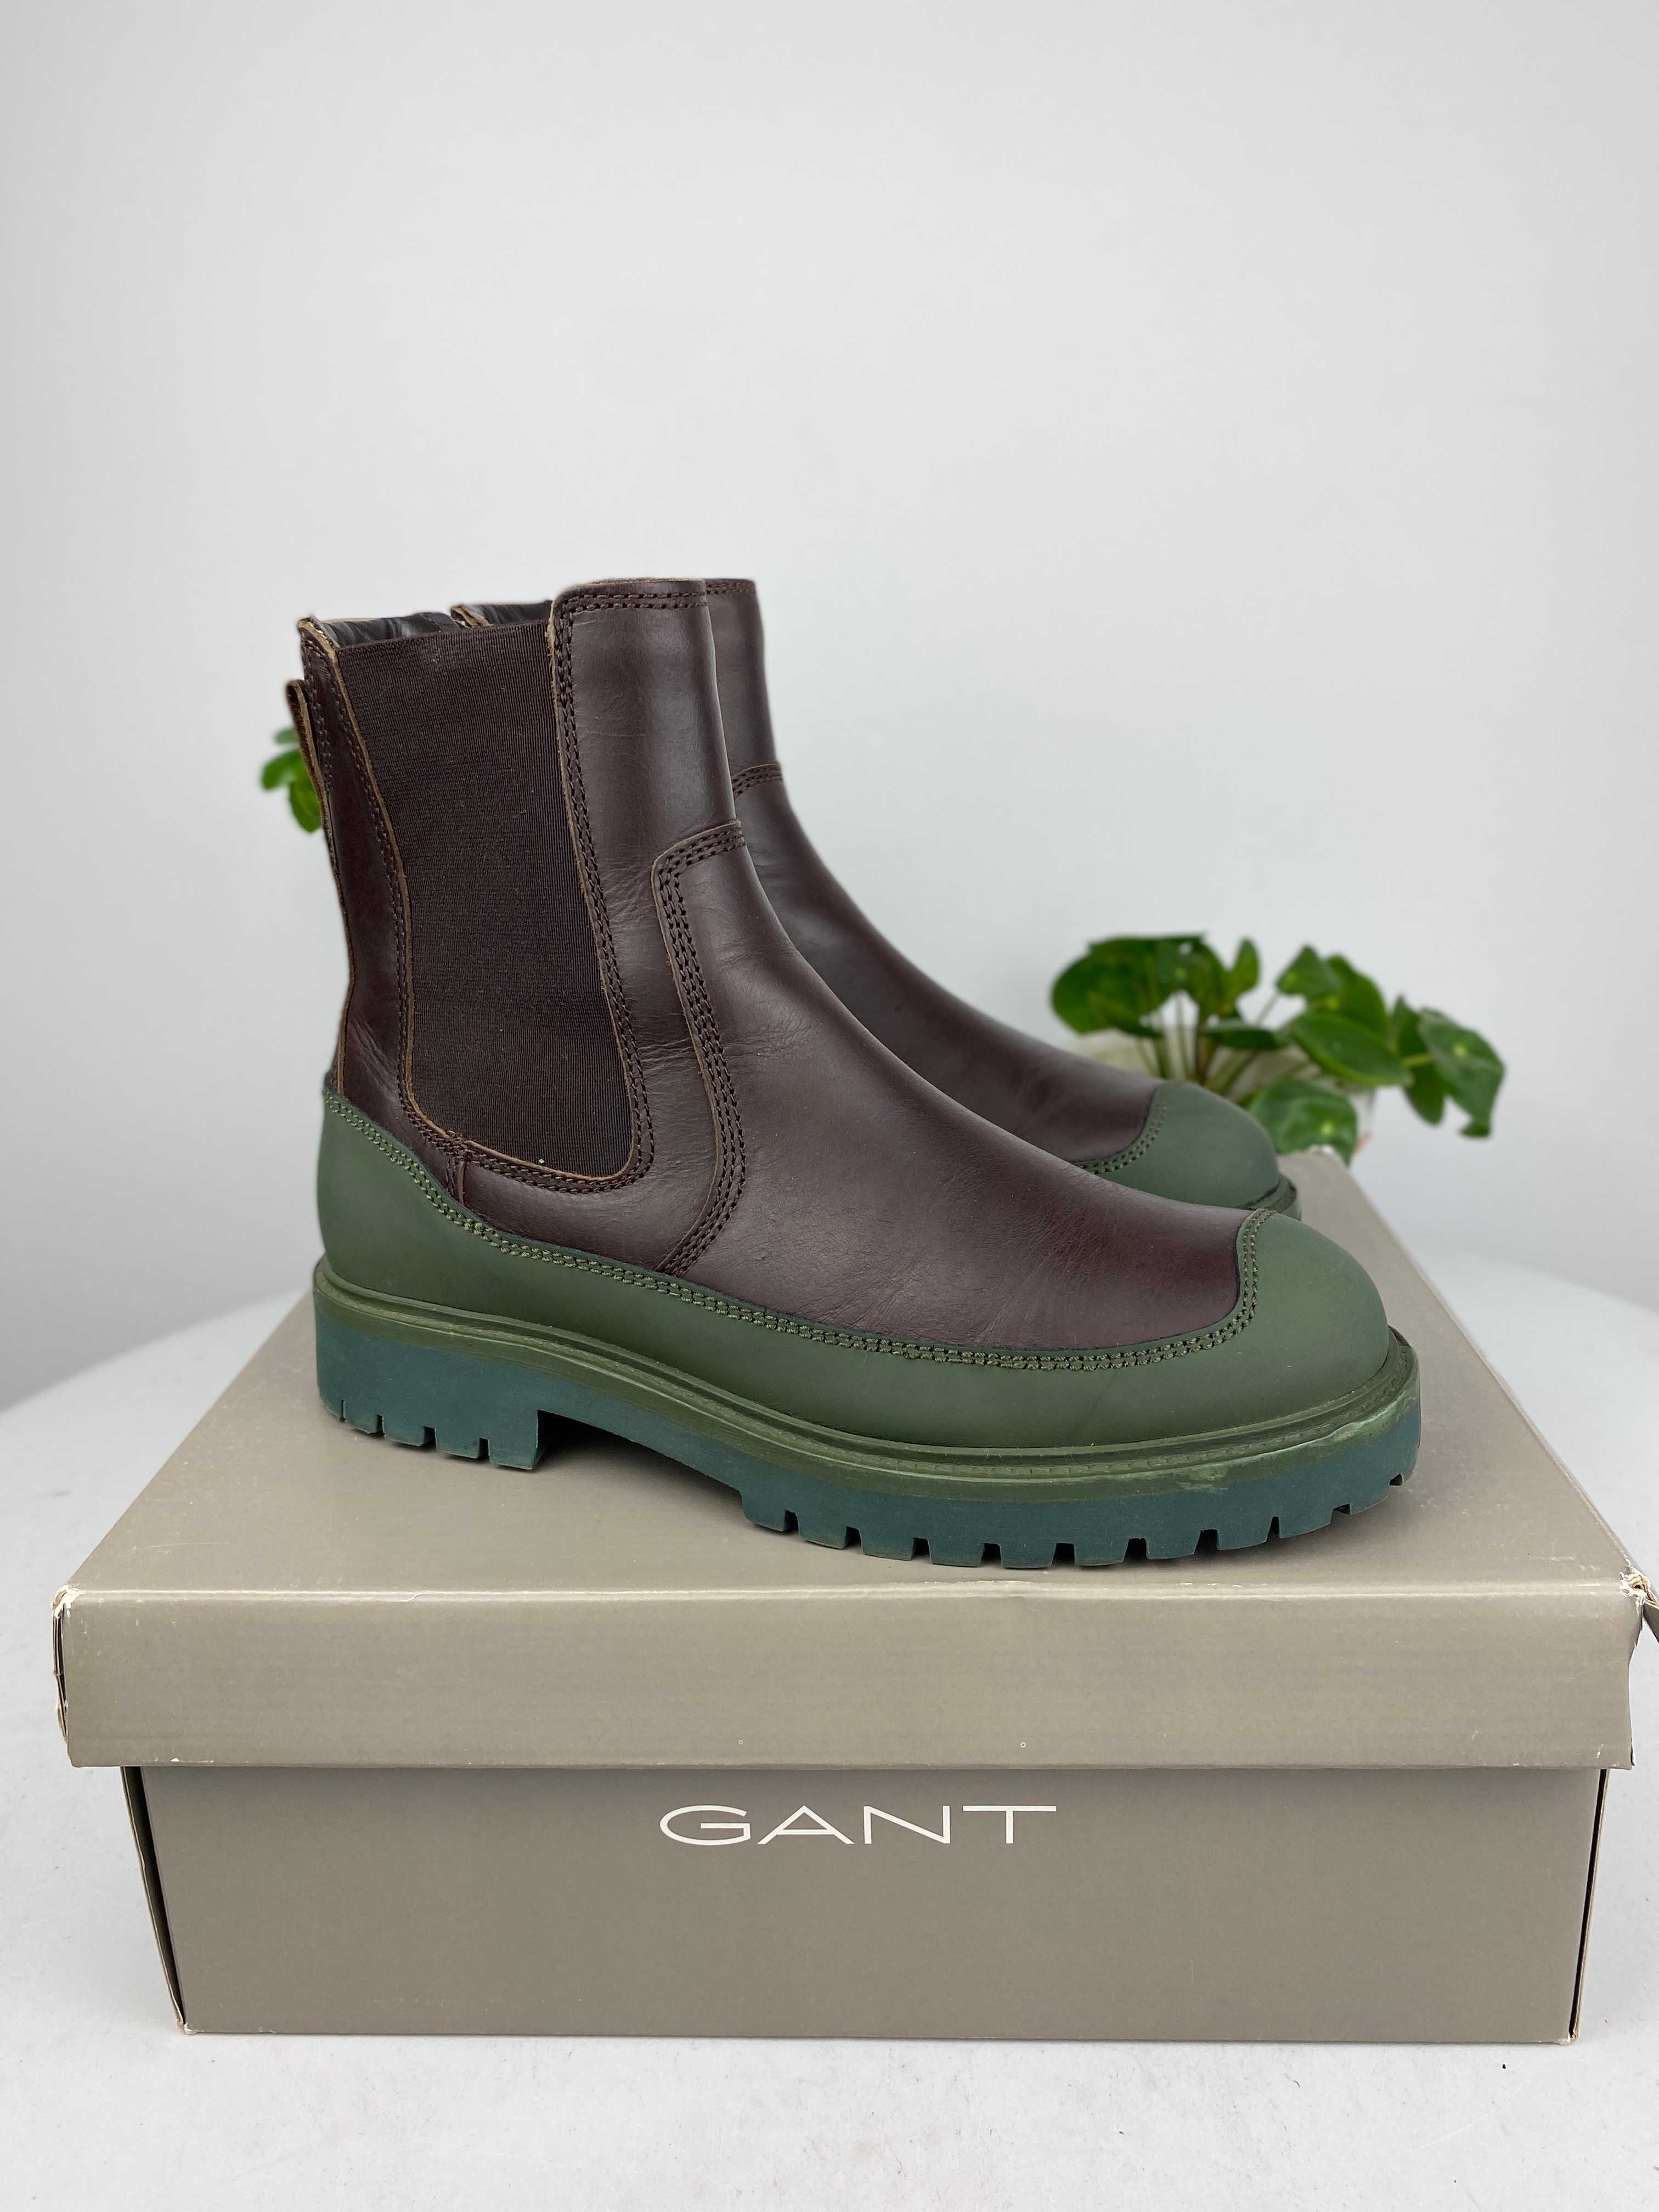 brązowe zielone buty botki sztyblety gant dalmont r. 39 n46